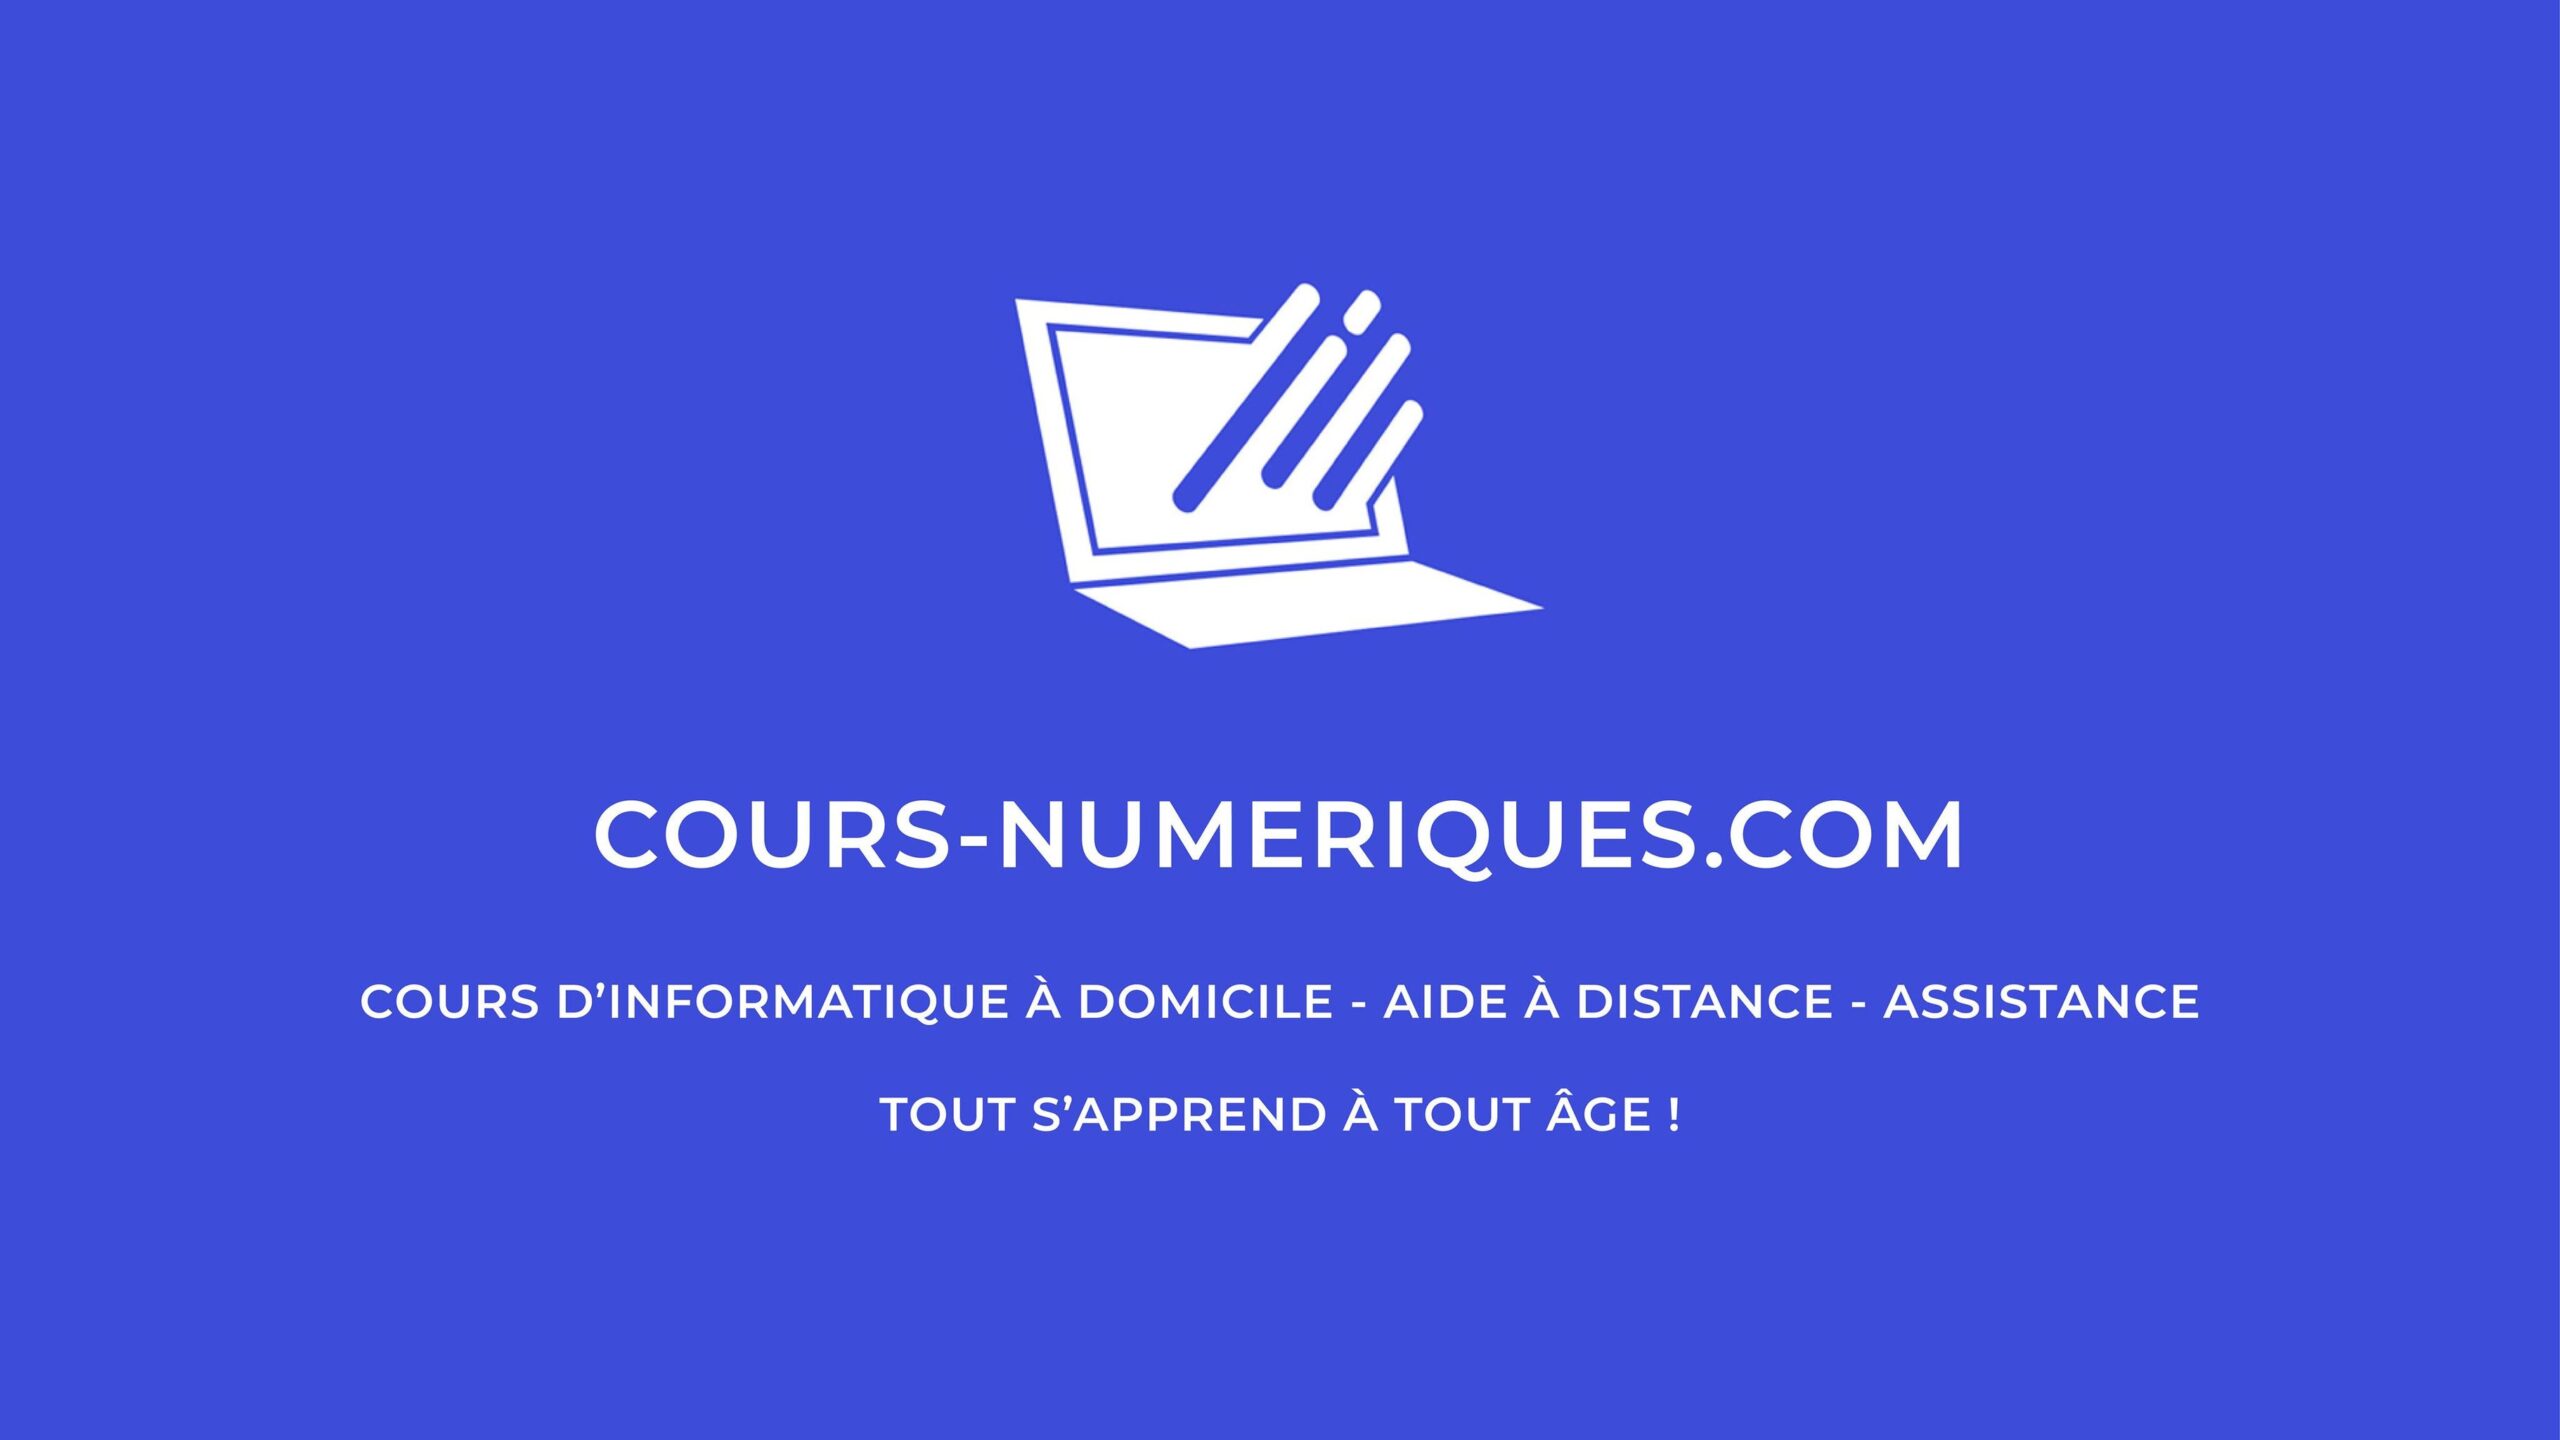 (c) Cours-numeriques.com